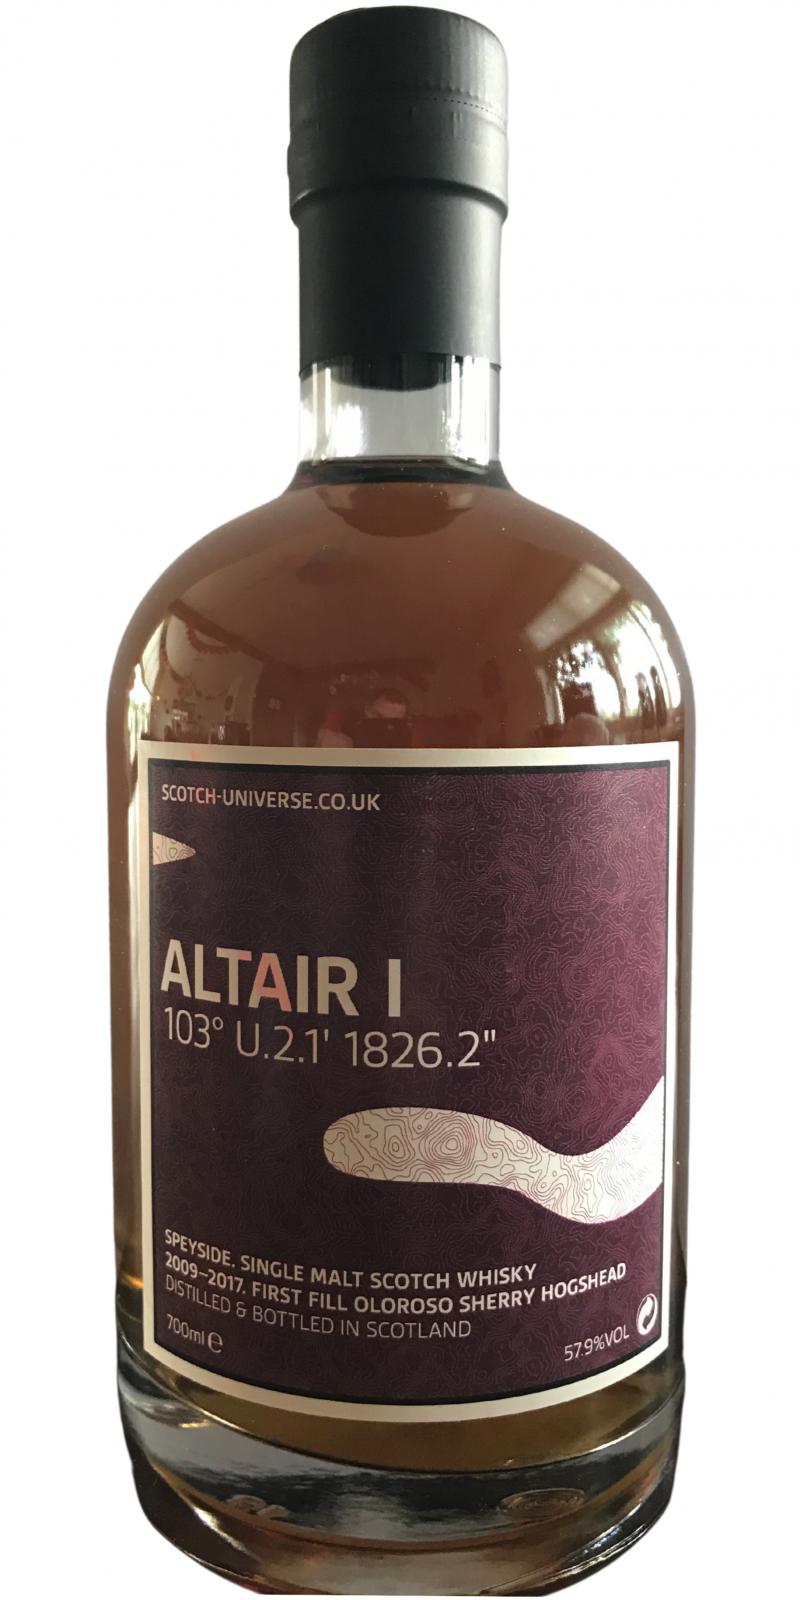 Scotch Universe Altair I - 103° U.2.1‘ 1826.2“